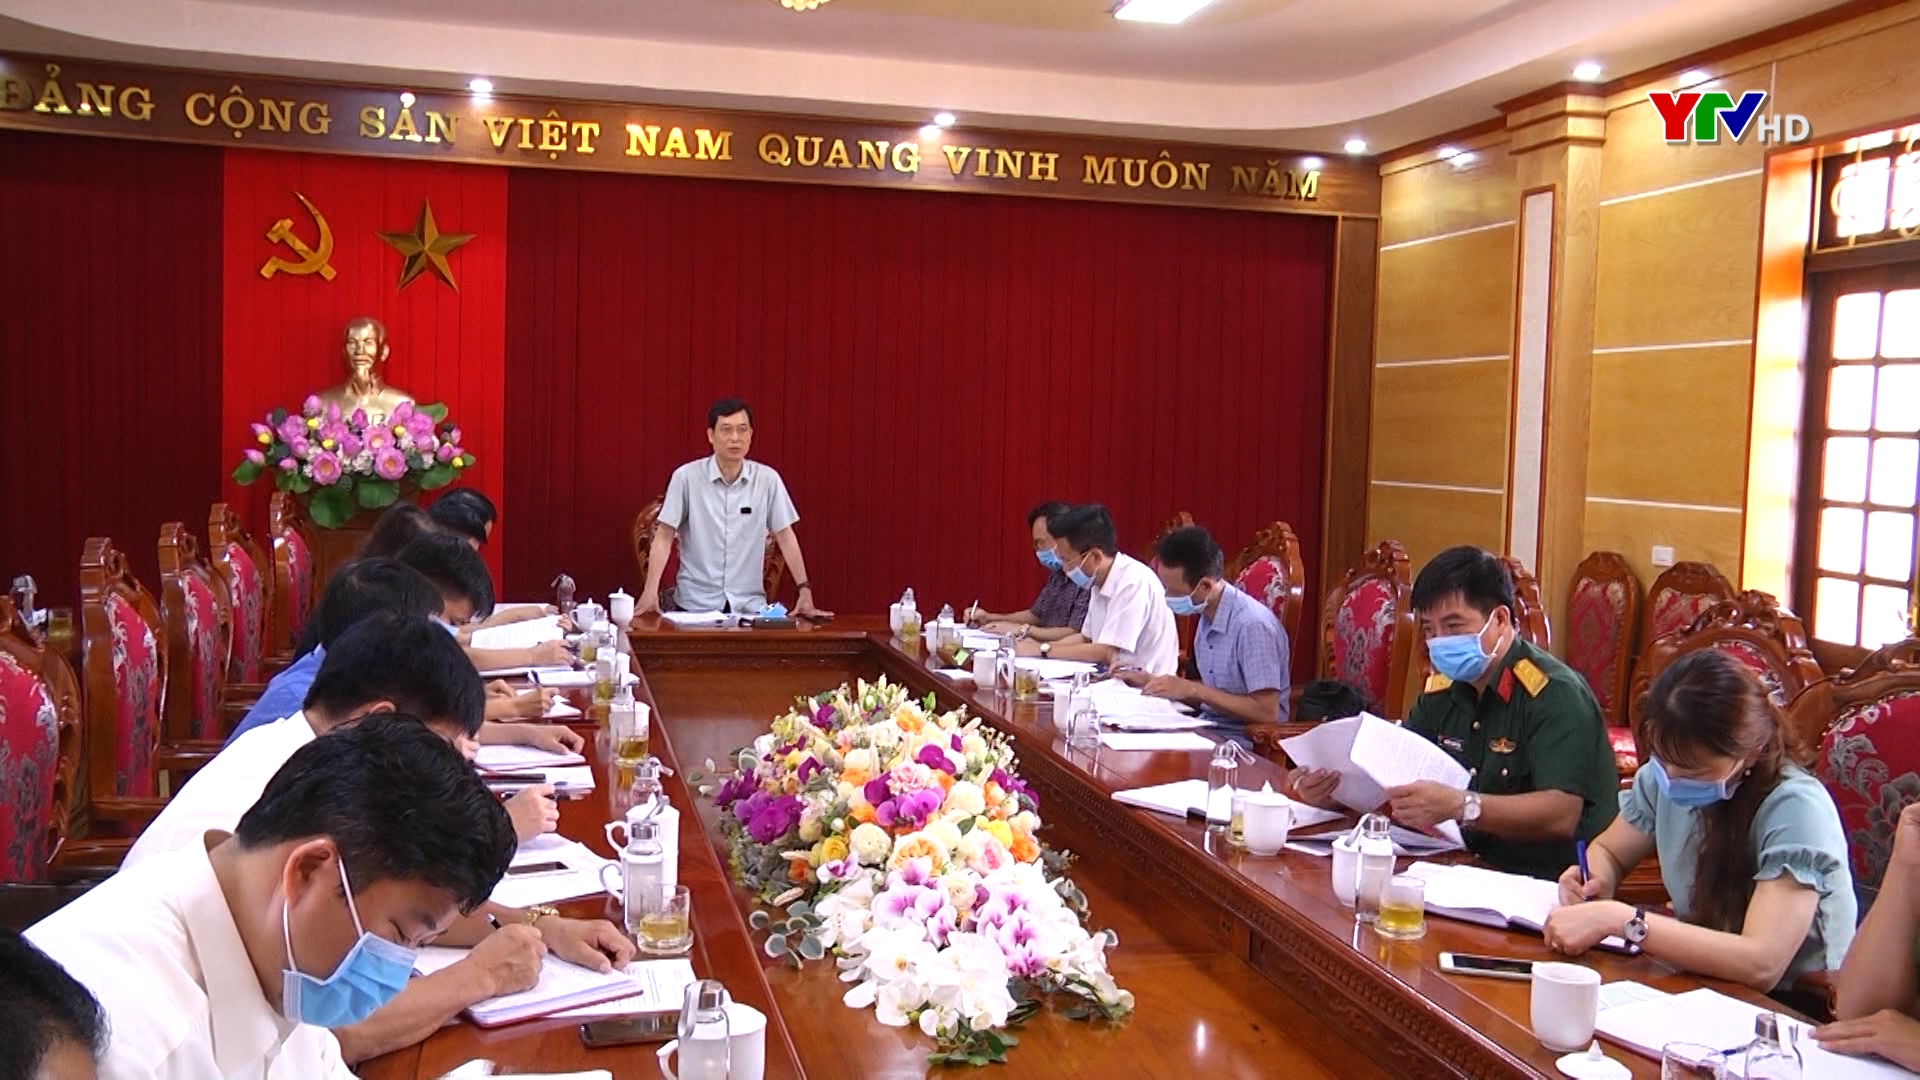 Đồng chí Nguyễn Minh Tuấn - Trưởng Ban Tuyên giáo Tỉnh ủy làm việc tại huyện Văn Yên